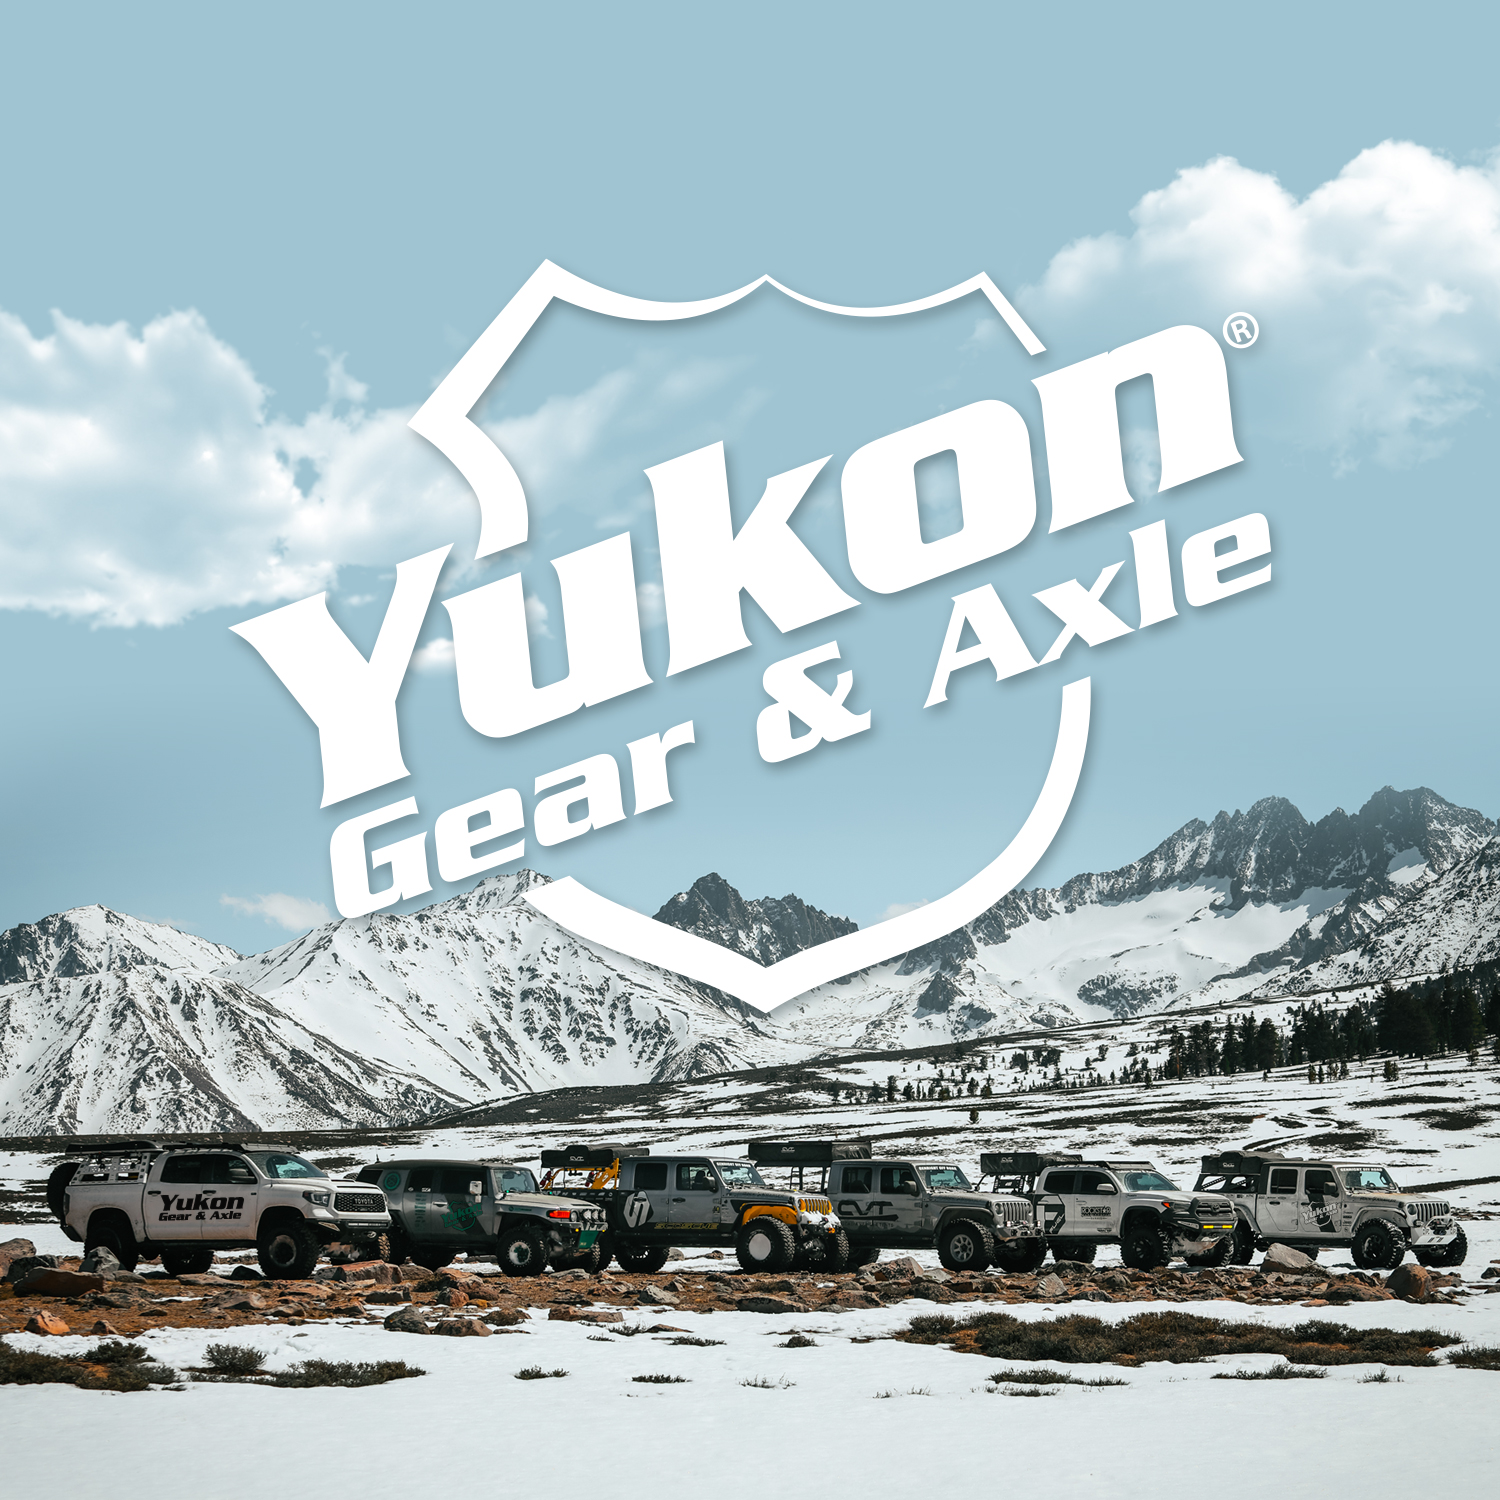 Yukon yoke for GM 12 bolt car & truck, 1330 u/joint size. 